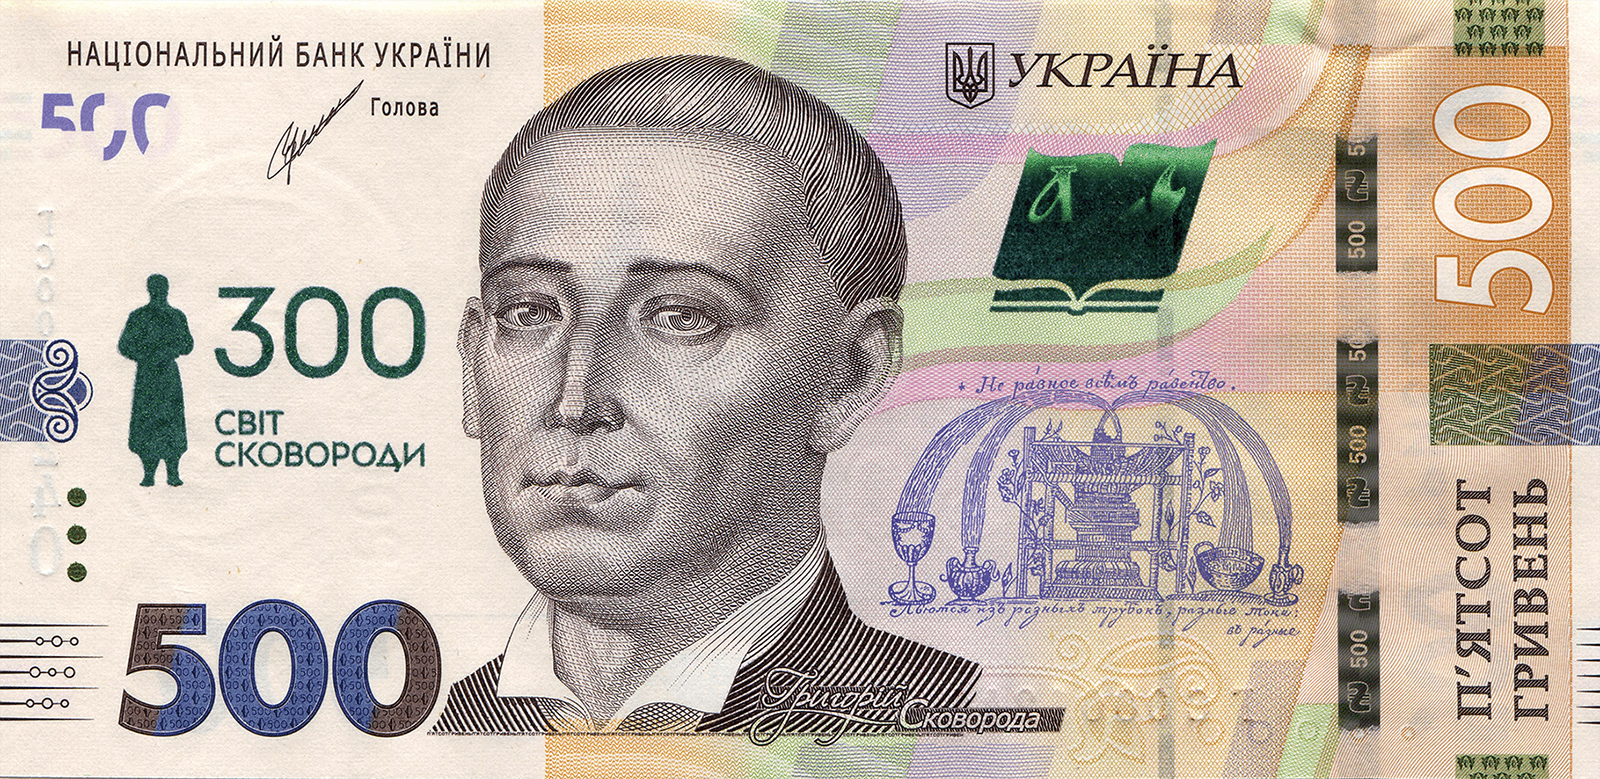 Пам`ятна банкнота номіналом 500 гривень зразка 2015 року до 300-річчя від дня народження Григорія Сковороди (у конверті) (аверс)